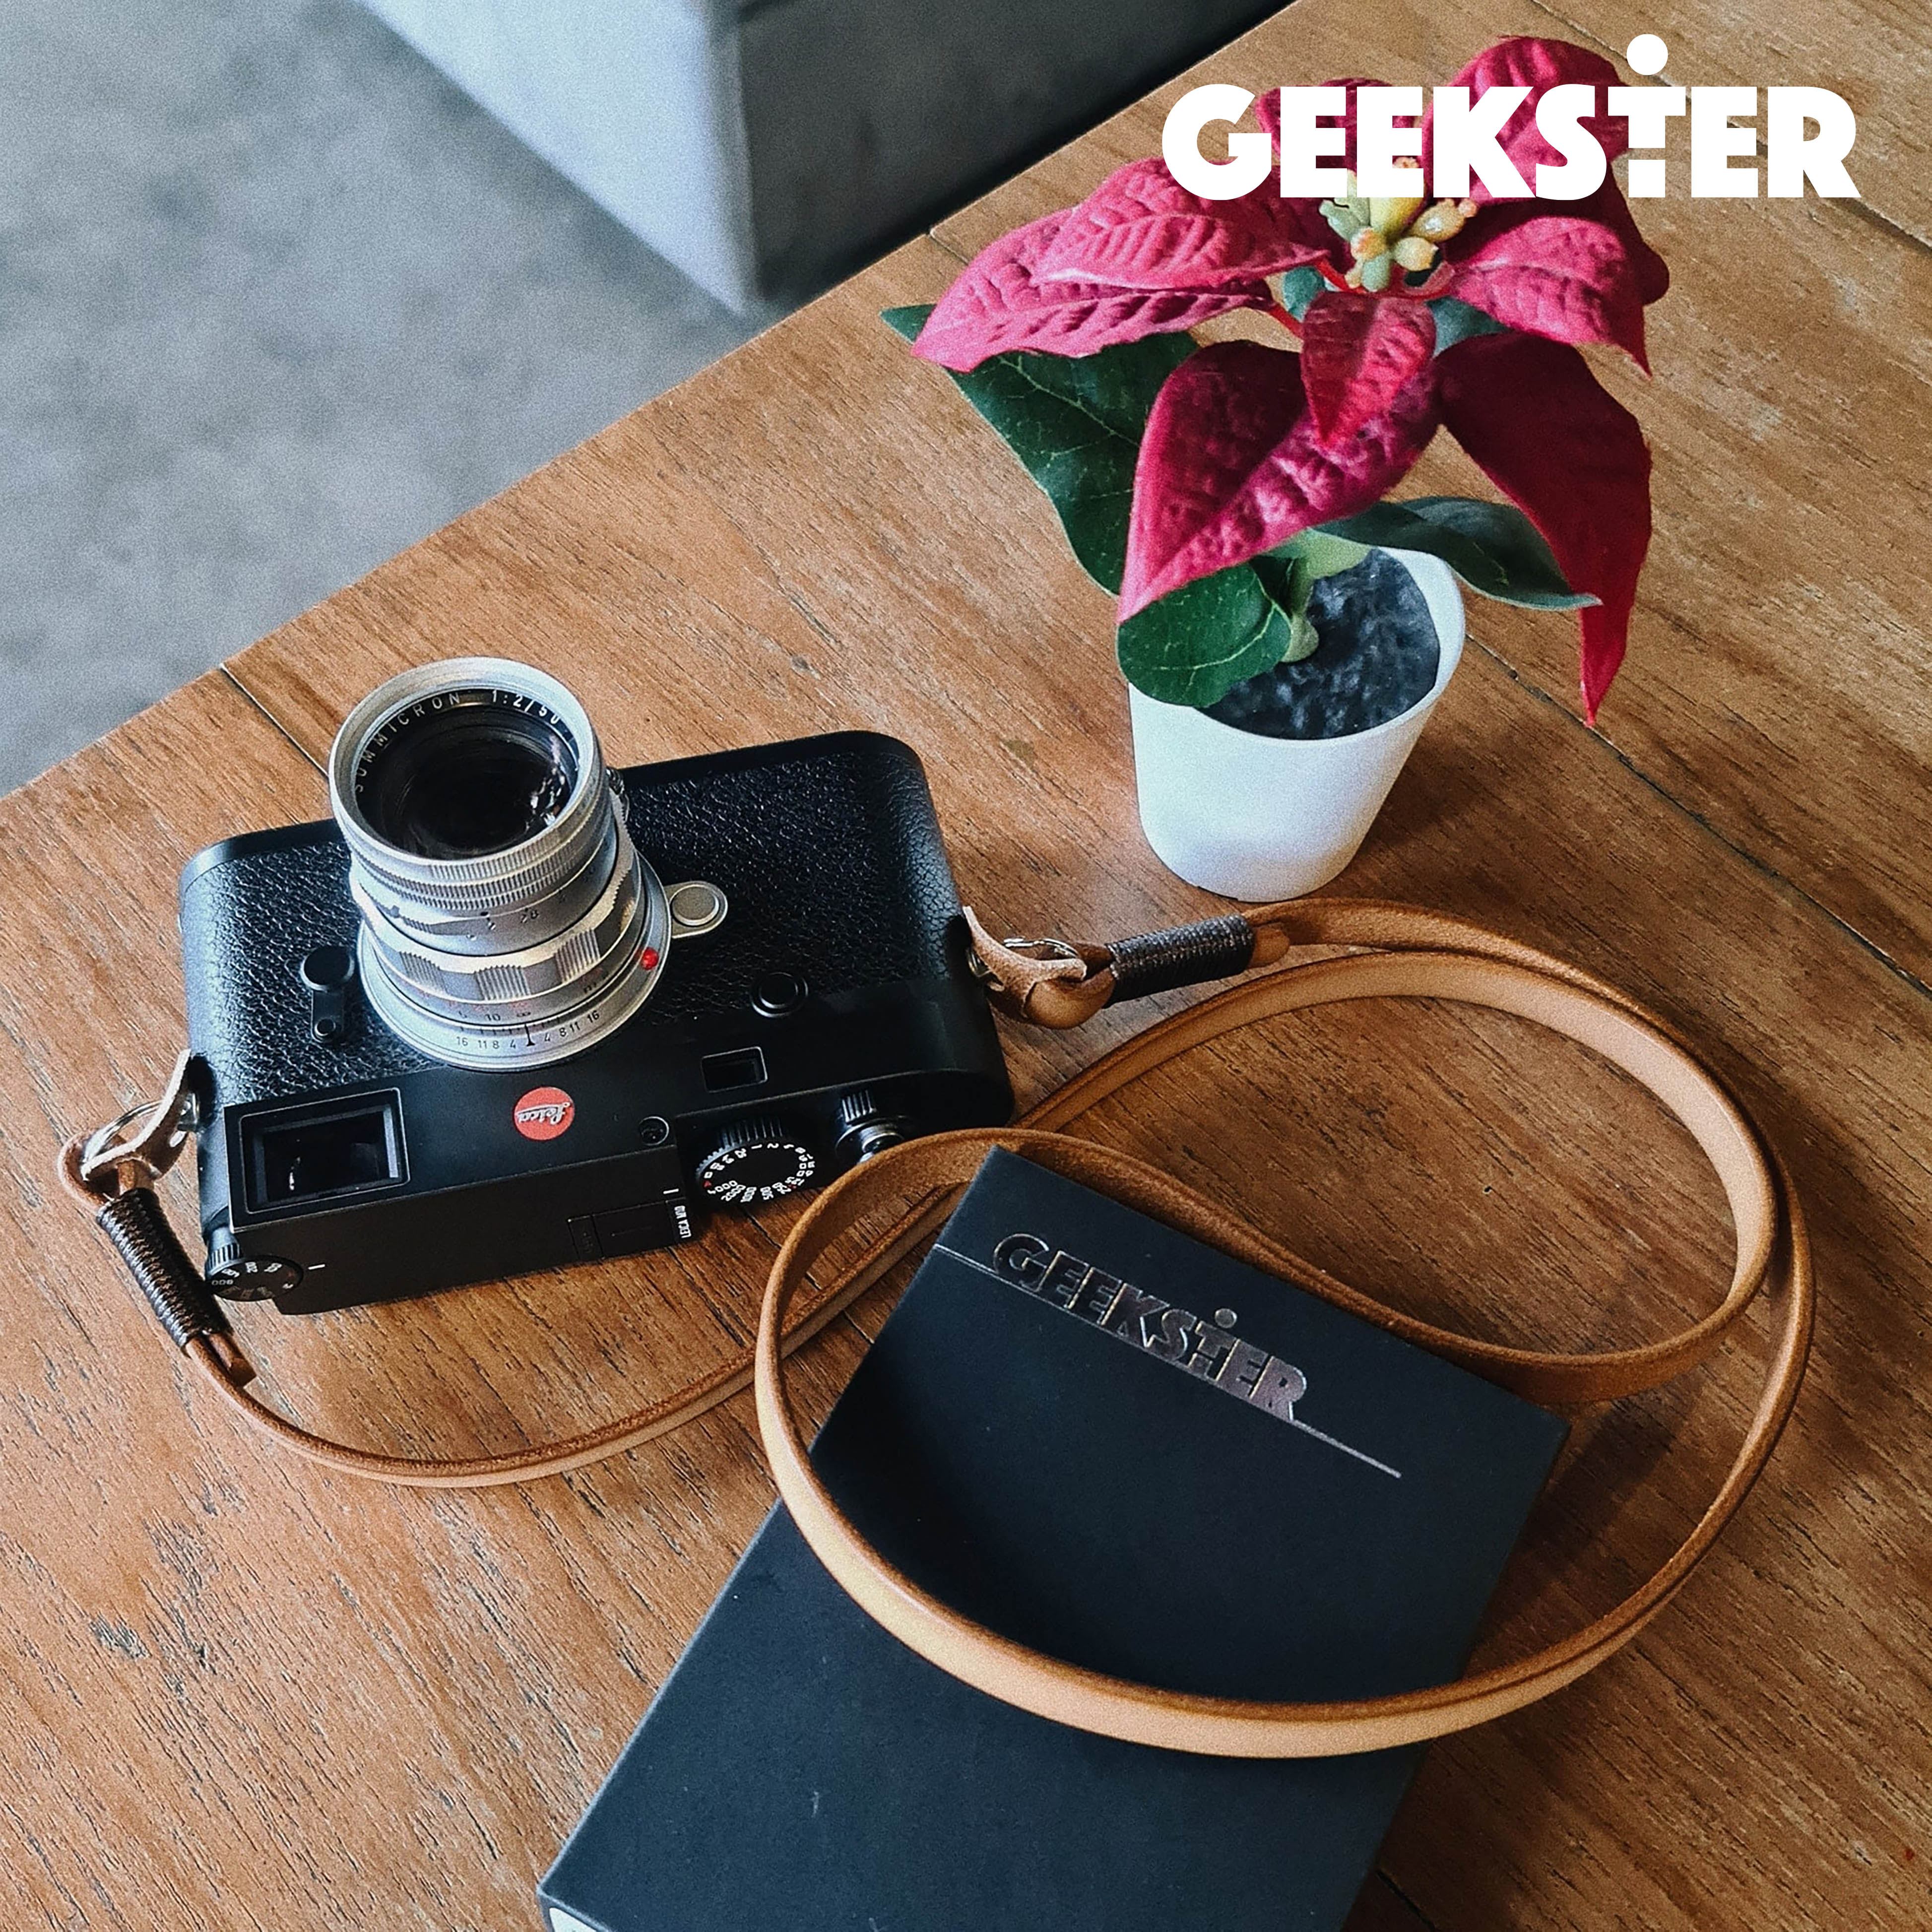 สายคล้องกล้อง หนังแท้ แบบห่วง GEEKSTER คล้องคอ ( Camera Leather Strap / สายหนัง สายคล้องคอ ห้อยกล้อง คล้องกล้อง สาย หนัง สายคล้อง สาย กล้อง ) ( Geekster )